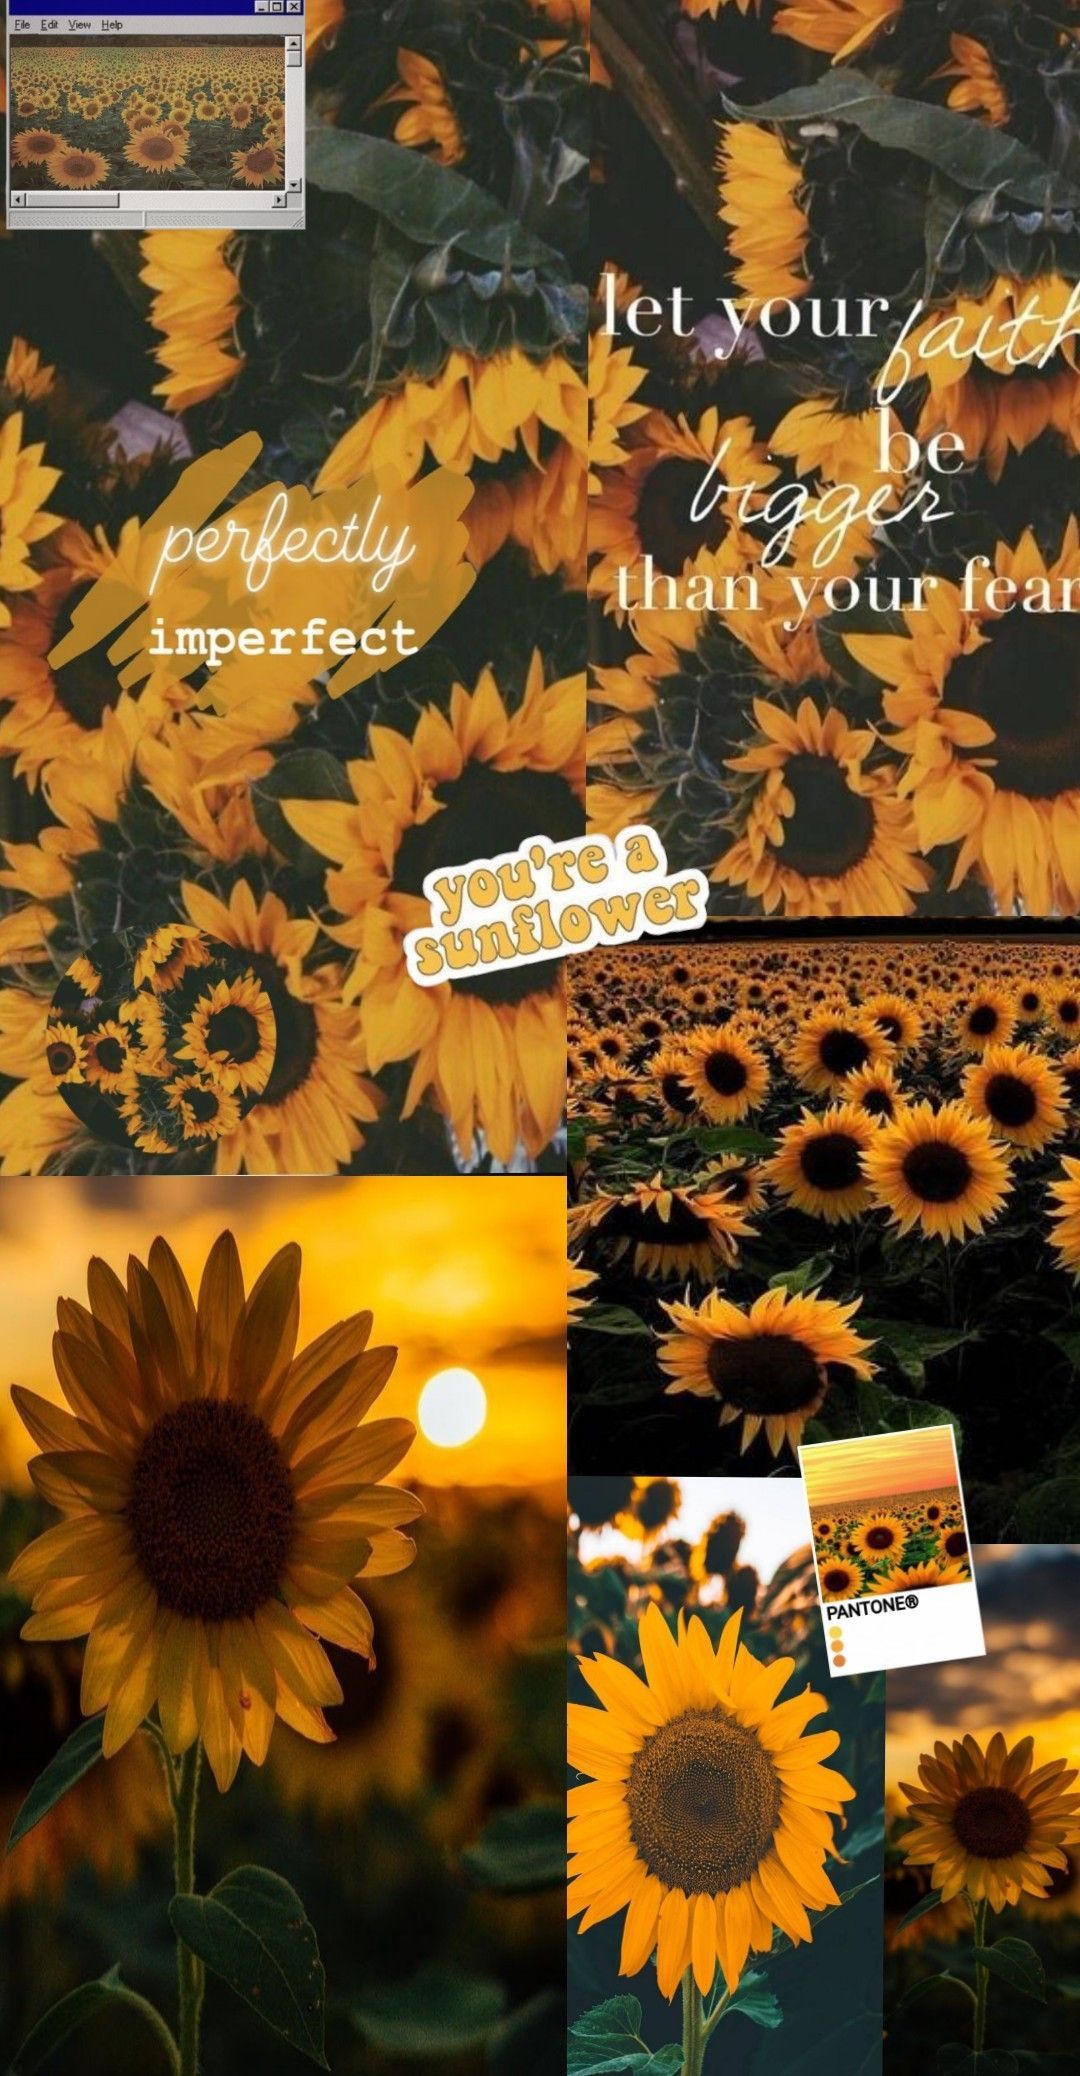 Aesthetic sunflower wallpaper for phone or desktop. - Sunflower